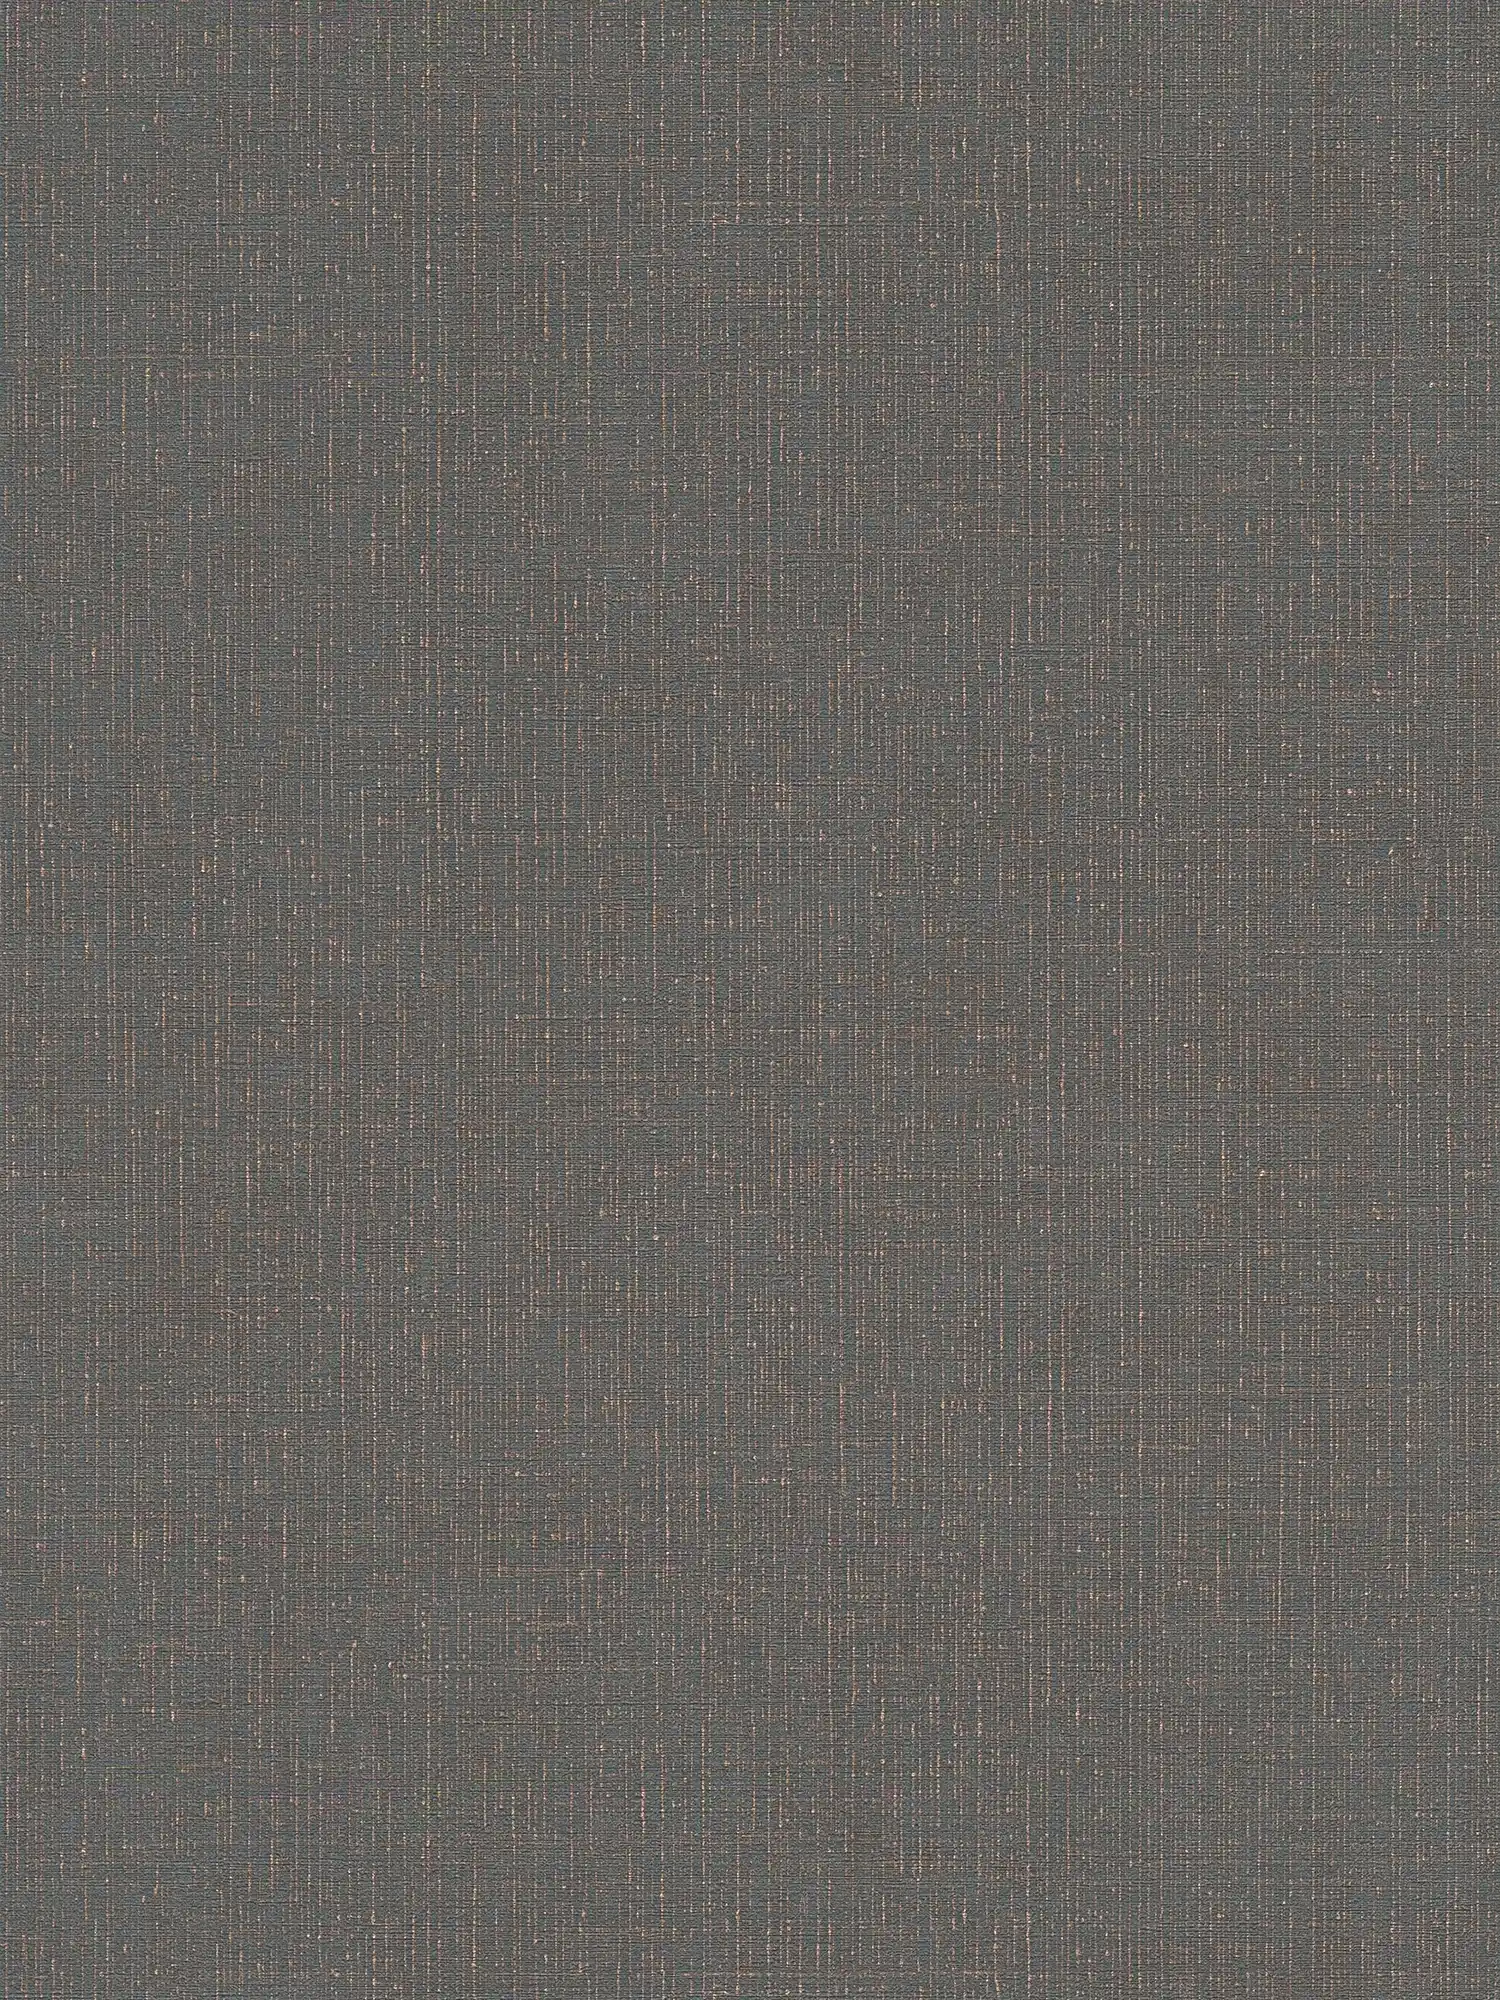 Textiel-look behang antraciet met linnenstructuur - zwart, grijs
